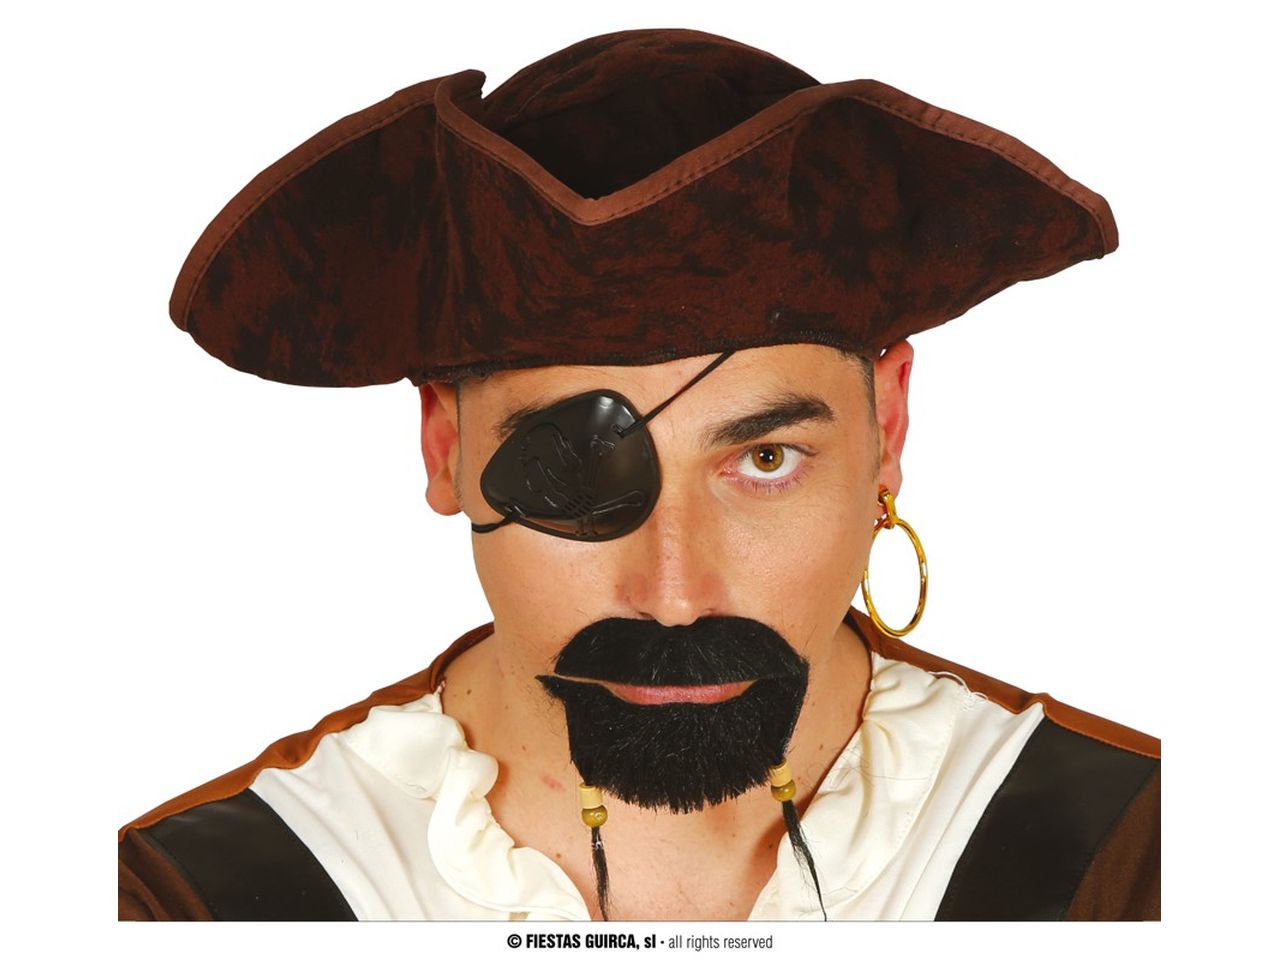 Benda per occhio e baffi da pirata